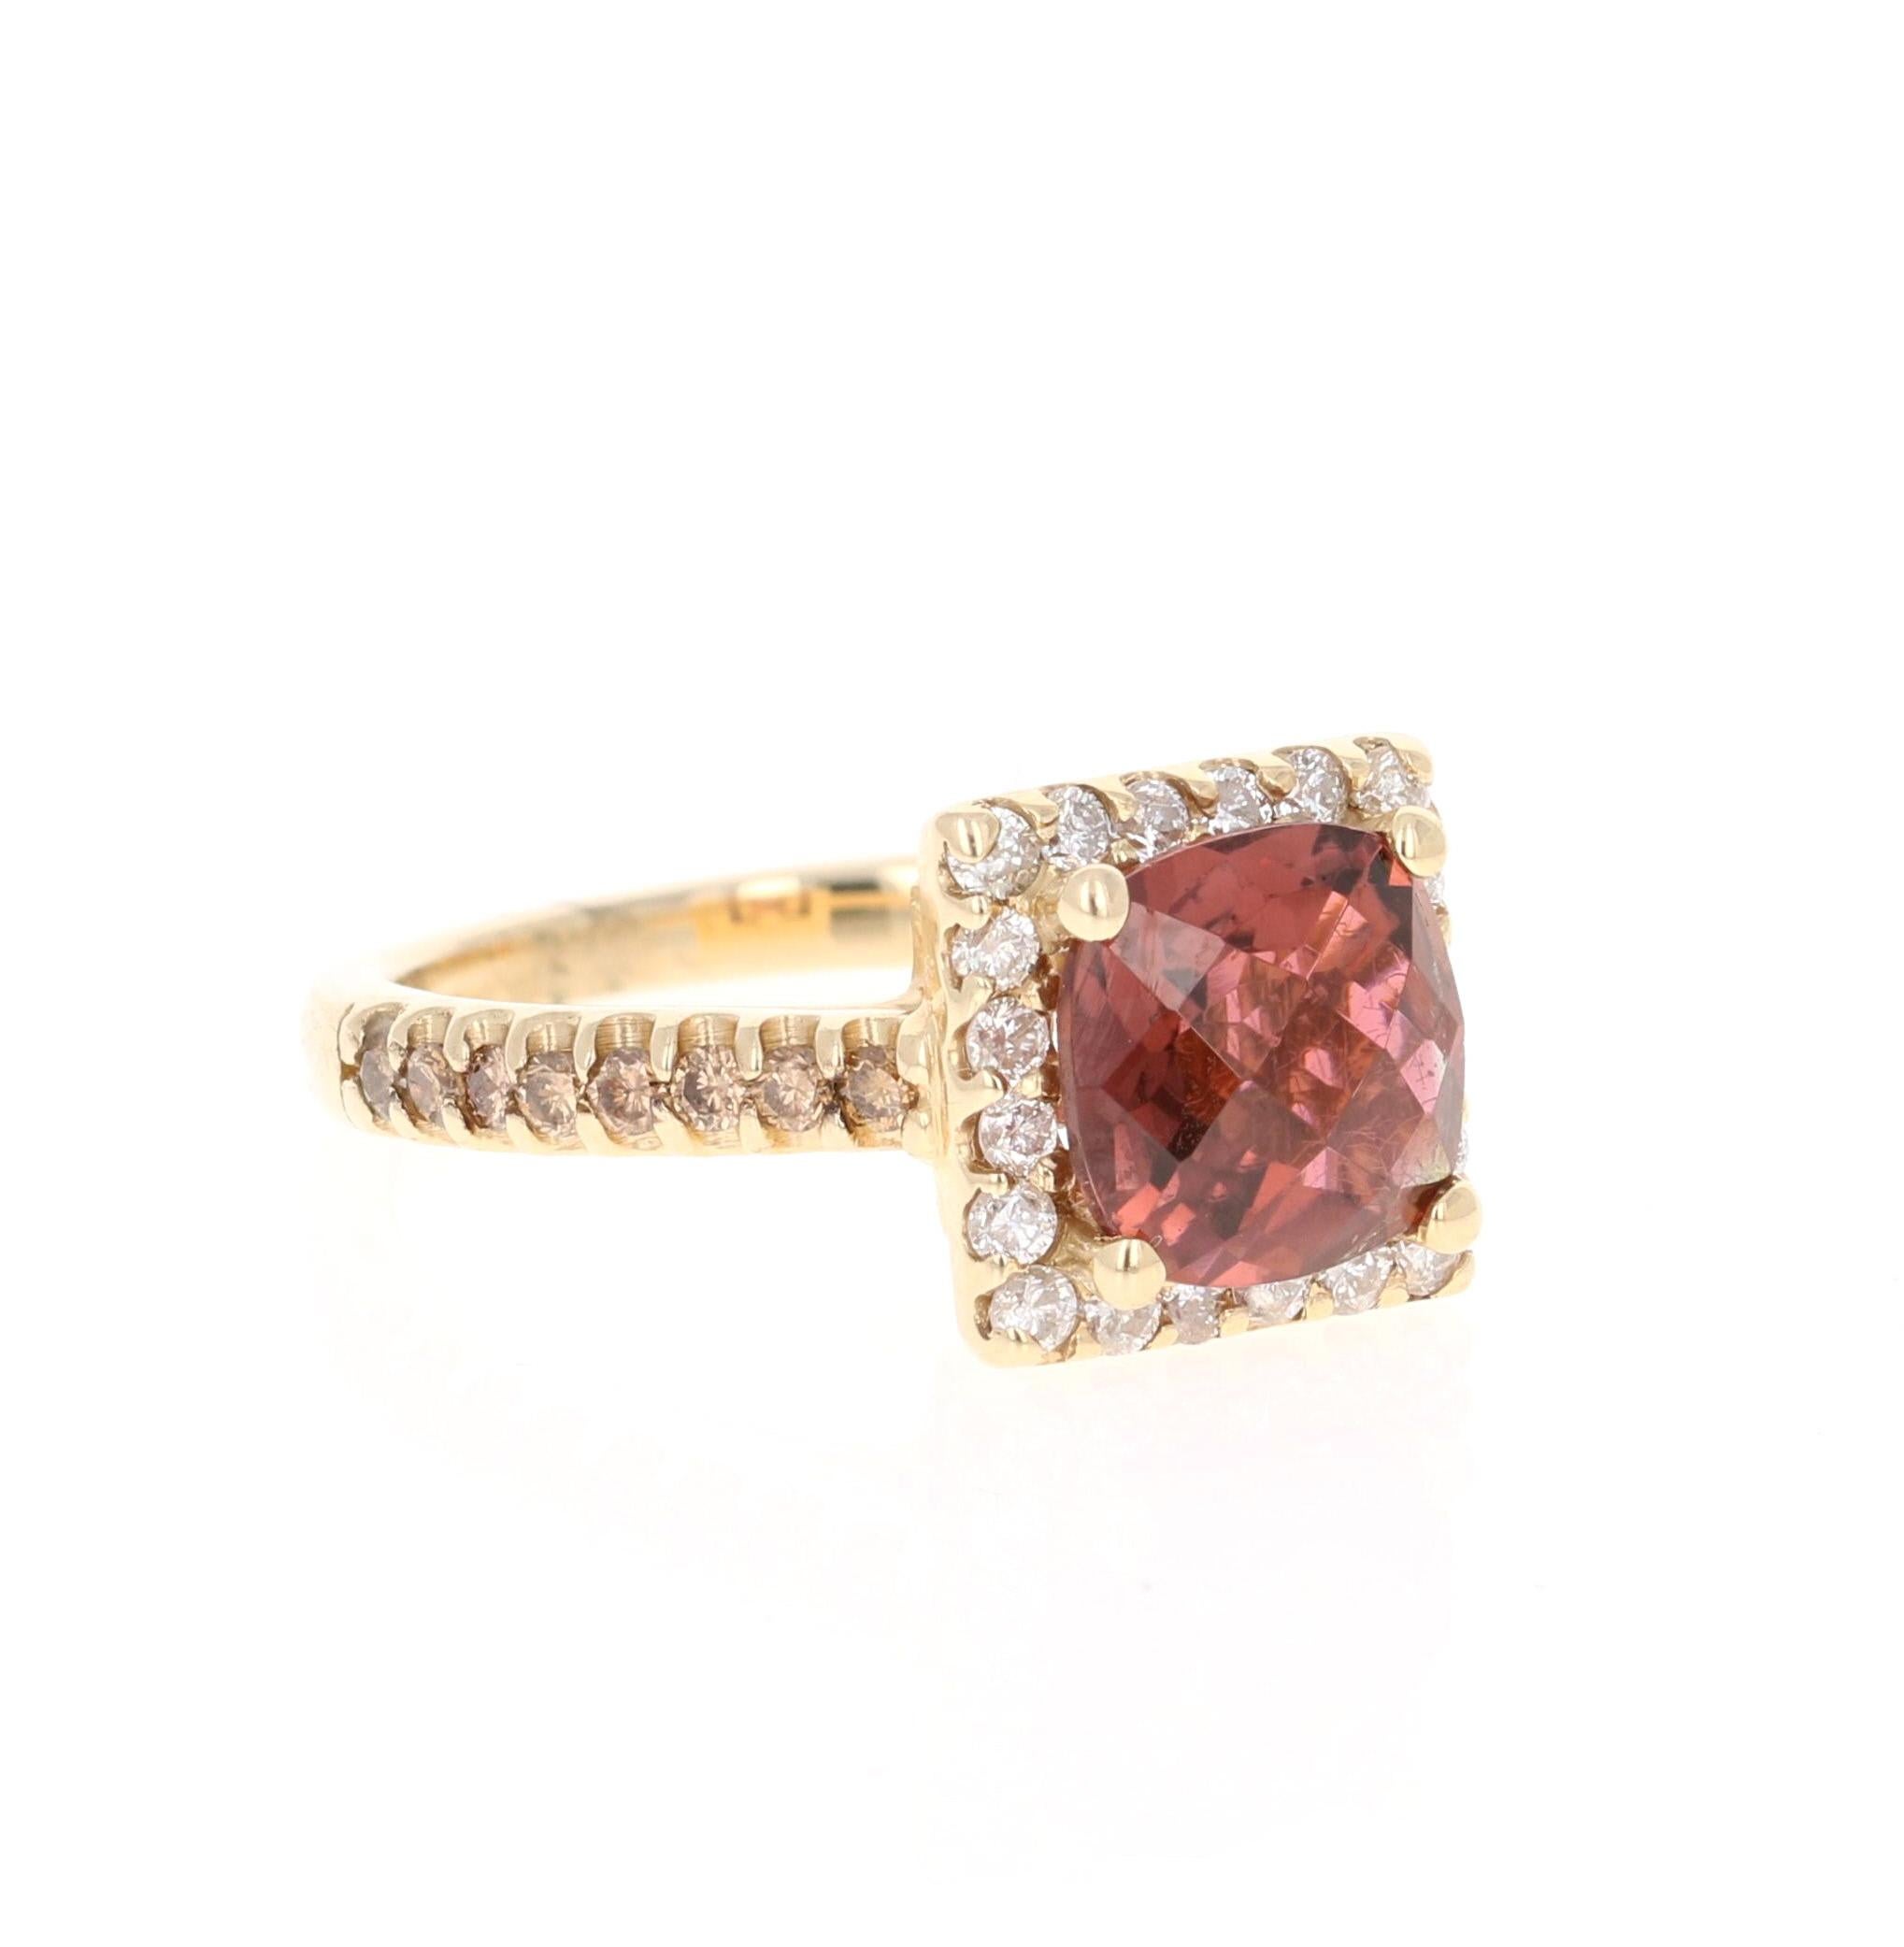 Dieser Ring hat einen hübschen Mauve-Brownish Cushion Cut Pink Turmalin, die 2,23 Karat wiegt. Um den Turmalin herum schweben 20 Diamanten im Rundschliff mit einem Gewicht von 0,39 Karat. Der Schaft des Rings hat 16 champagnerfarbene natürliche